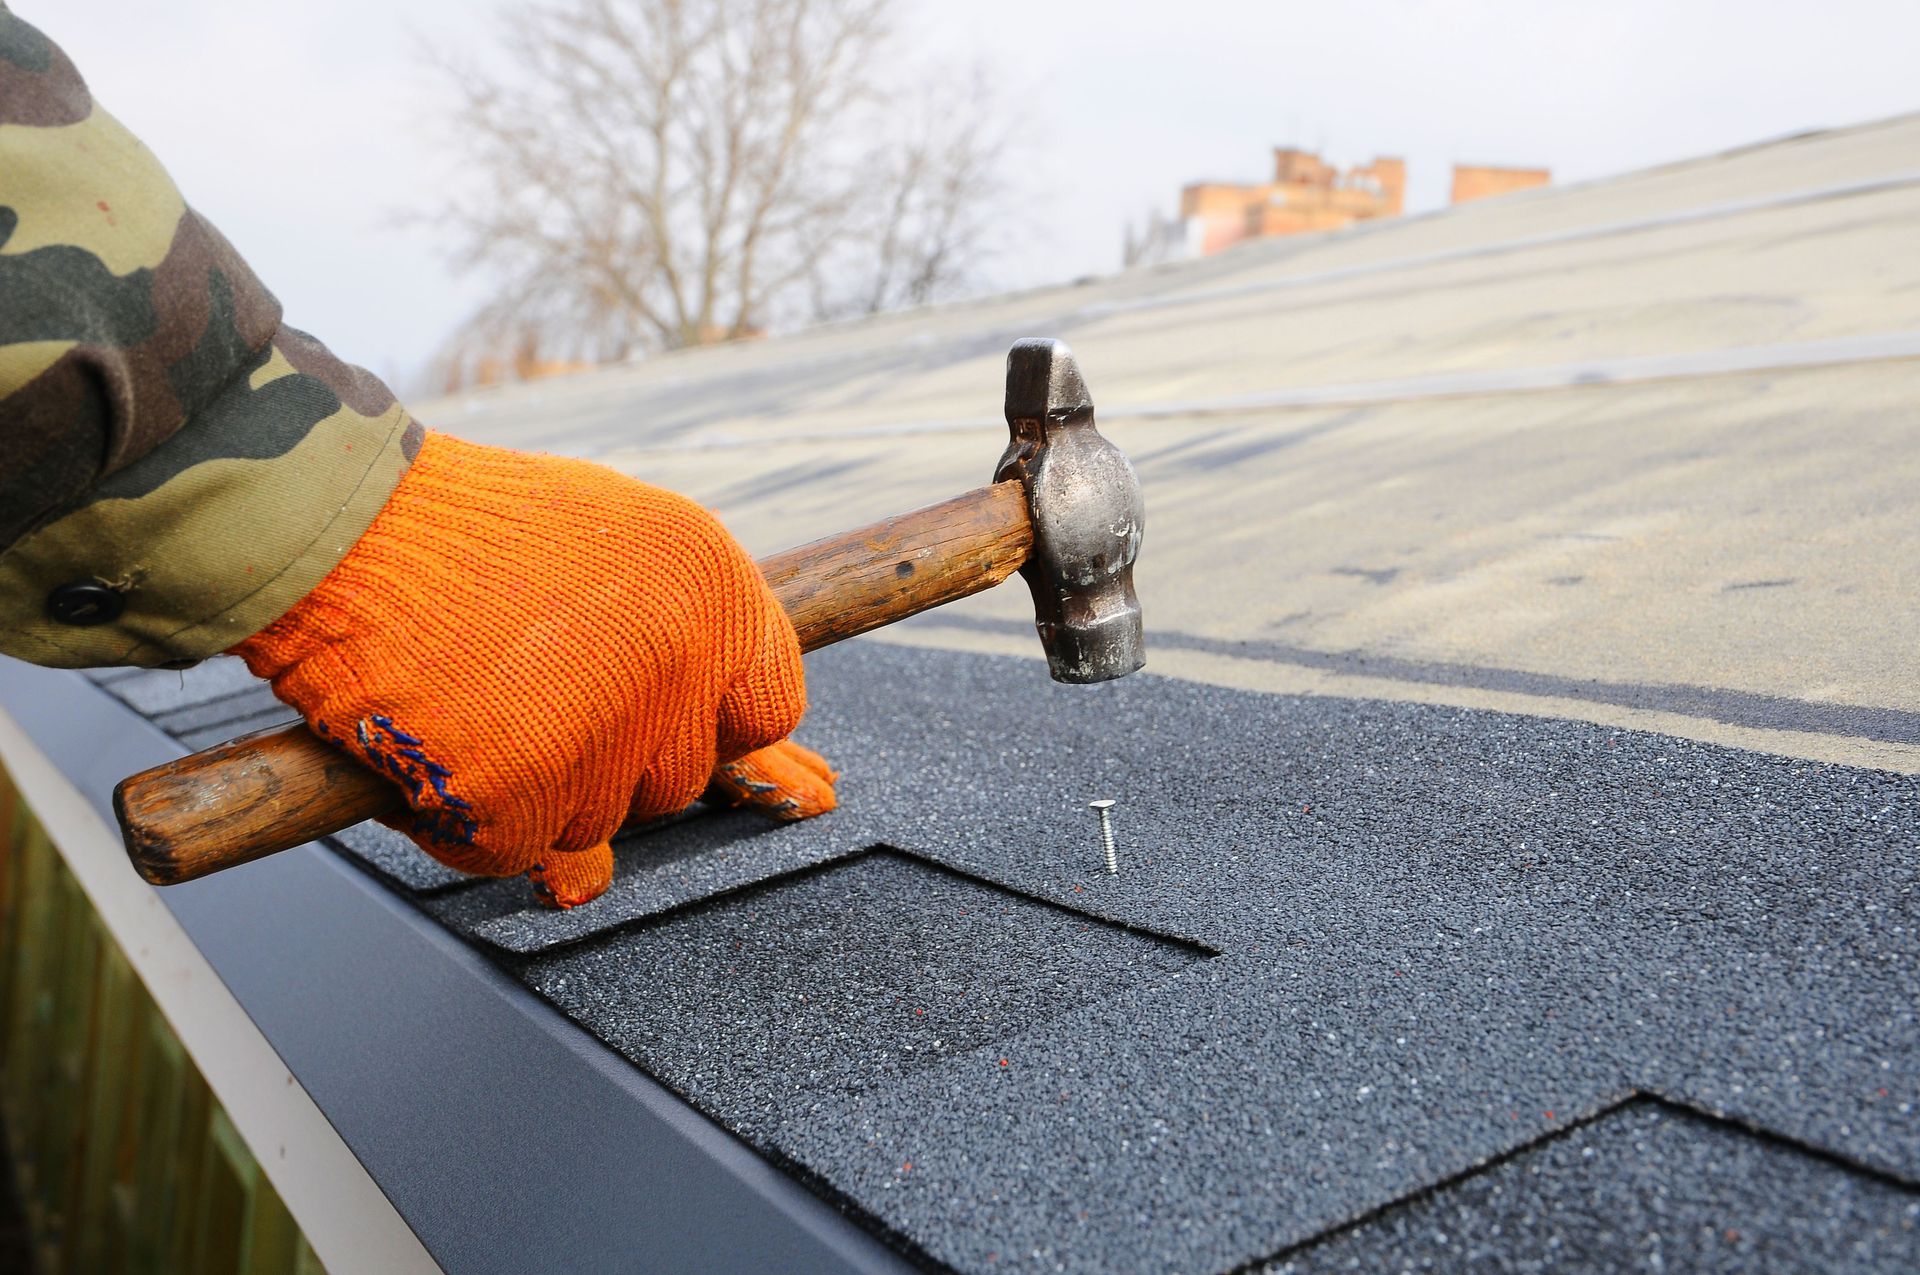 emergency roof repairs